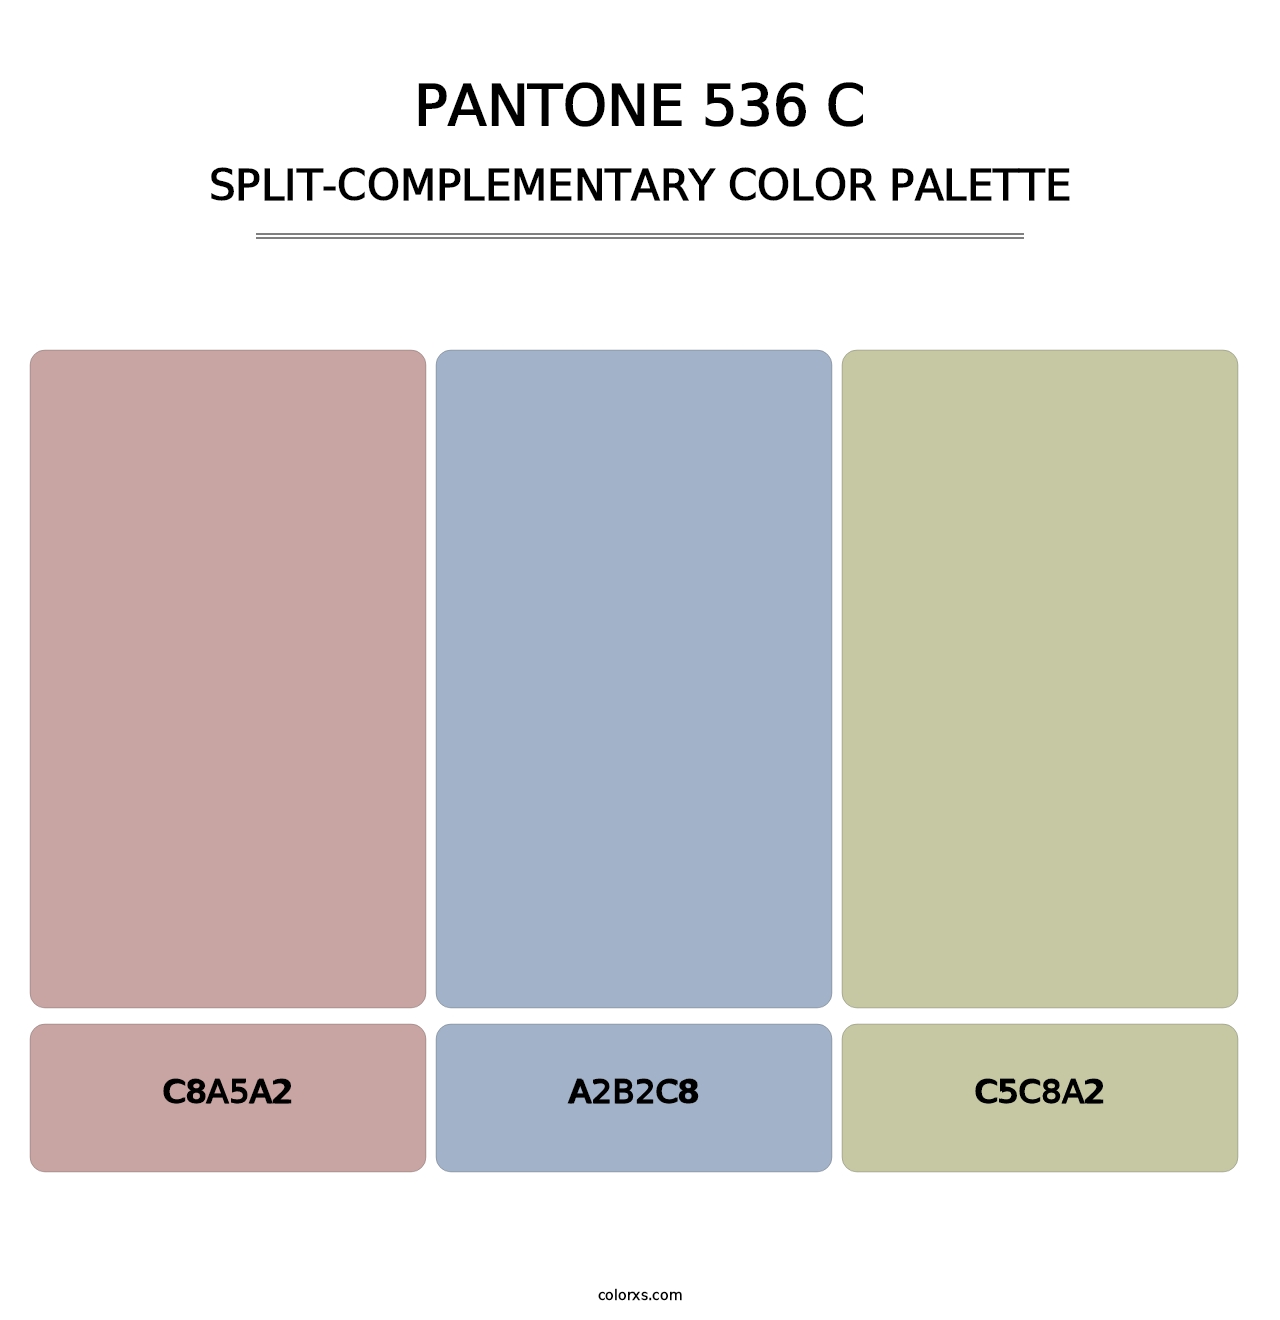 PANTONE 536 C - Split-Complementary Color Palette